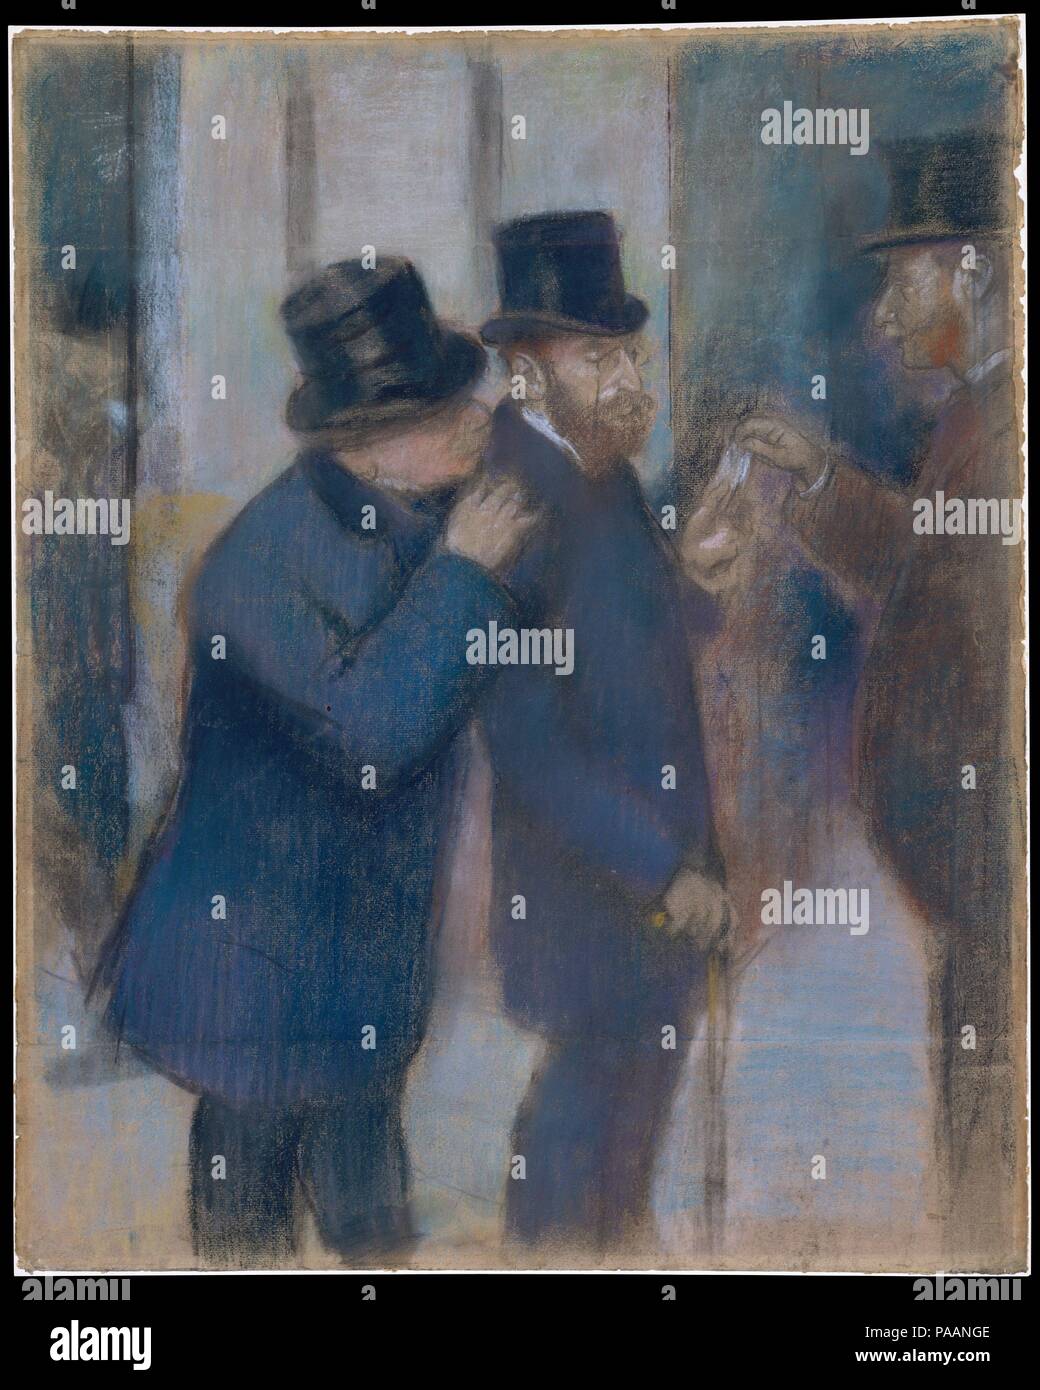 Porträts an der Börse. Künstler: Edgar Degas (Französisch, Paris 1834-1917 Paris). Abmessungen: 28 3/8 x 22 7/8 in. (72,1 x 58,1 cm). Datum: Ca. 1878-79. Diese Studie für ein Ölgemälde von Degas von 1878-79 (Musée d'Orsay, Paris) Zeigt die Finanzier und Sammler Ernest (1845-1925) unter dem Portikus der Pariser Börse. Zu der Zeit, war in seinem Anfang der 30er Jahre und am Anfang seine Erwerbungen aus dem alten Meister und achtzehnten Jahrhunderts Bilder zu Werke von Degas, Manet zu erweitern und ihre Kollegen. Museum: Metropolitan Museum of Art, New York, USA. Stockfoto